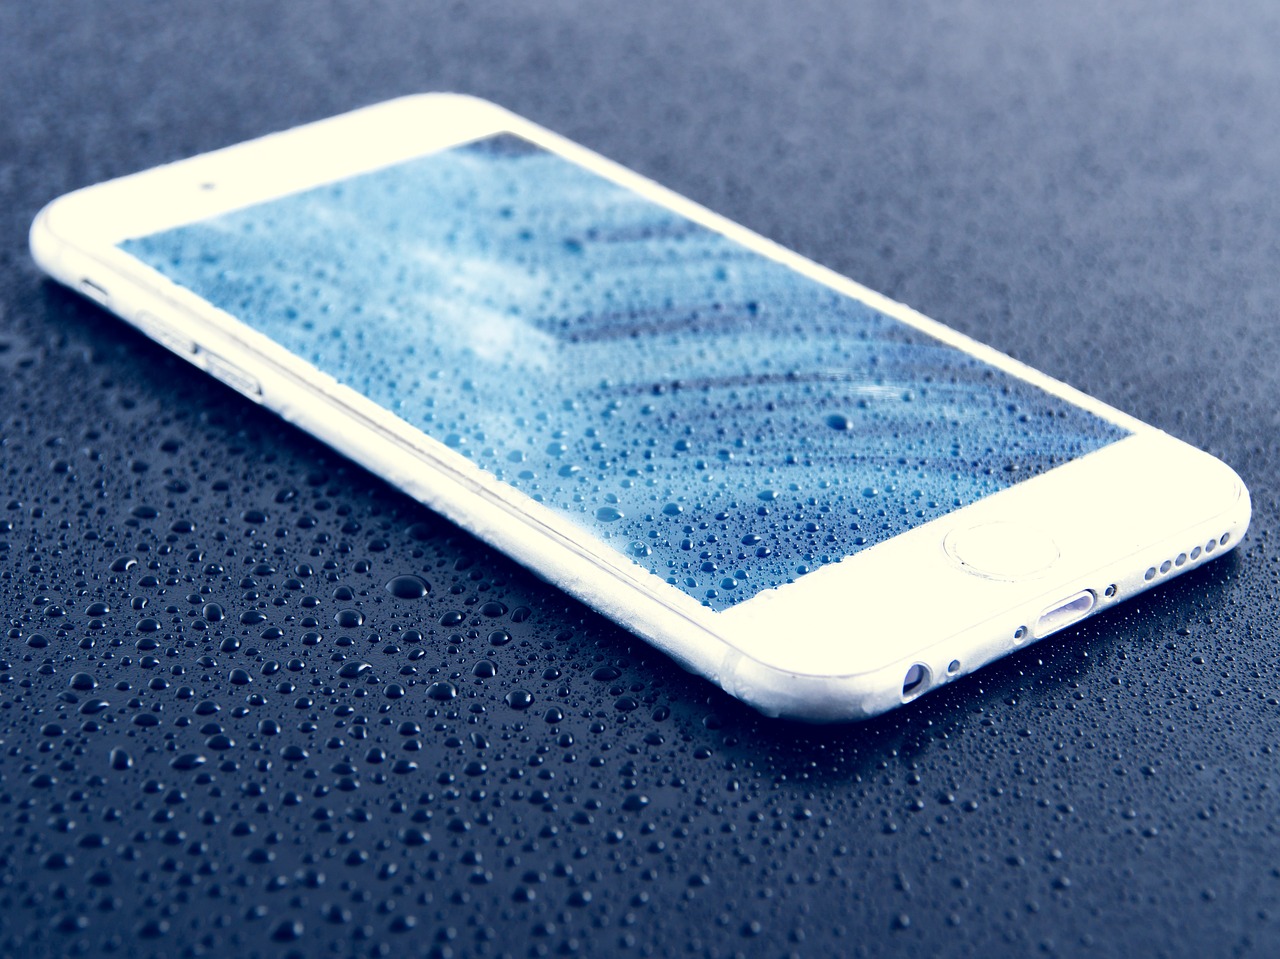 El iPhone 8 no es resistente al agua, aunque lo diga su publicidad